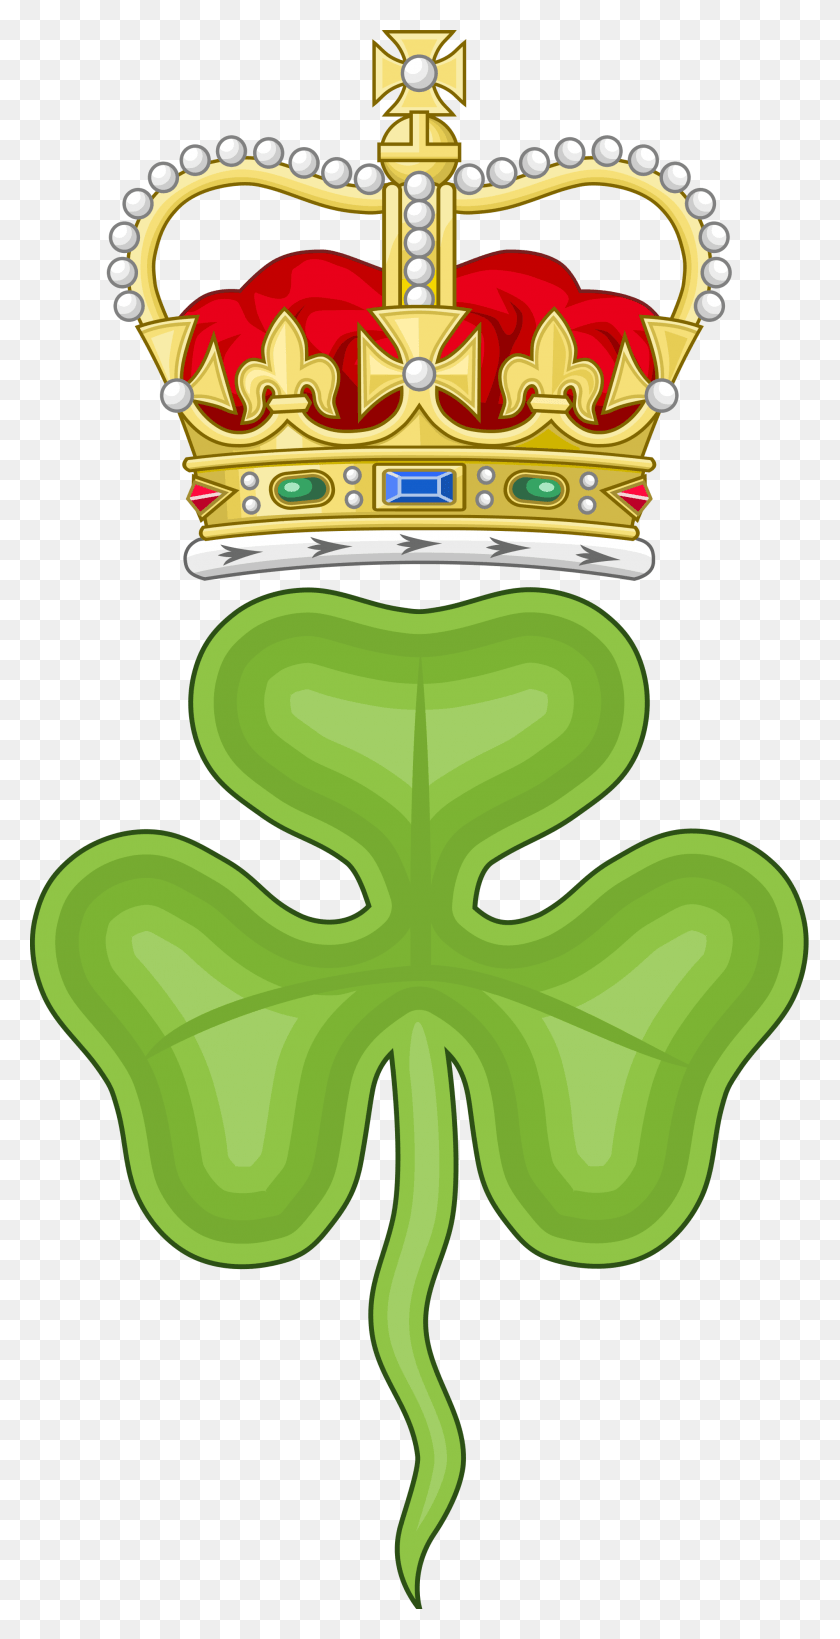 2000x4050 Png Изображение - Трилистник Королевский Значок Ирландии, Символ Короля Генриха Viii, Аксессуары, Аксессуары, Ювелирные Изделия Png.